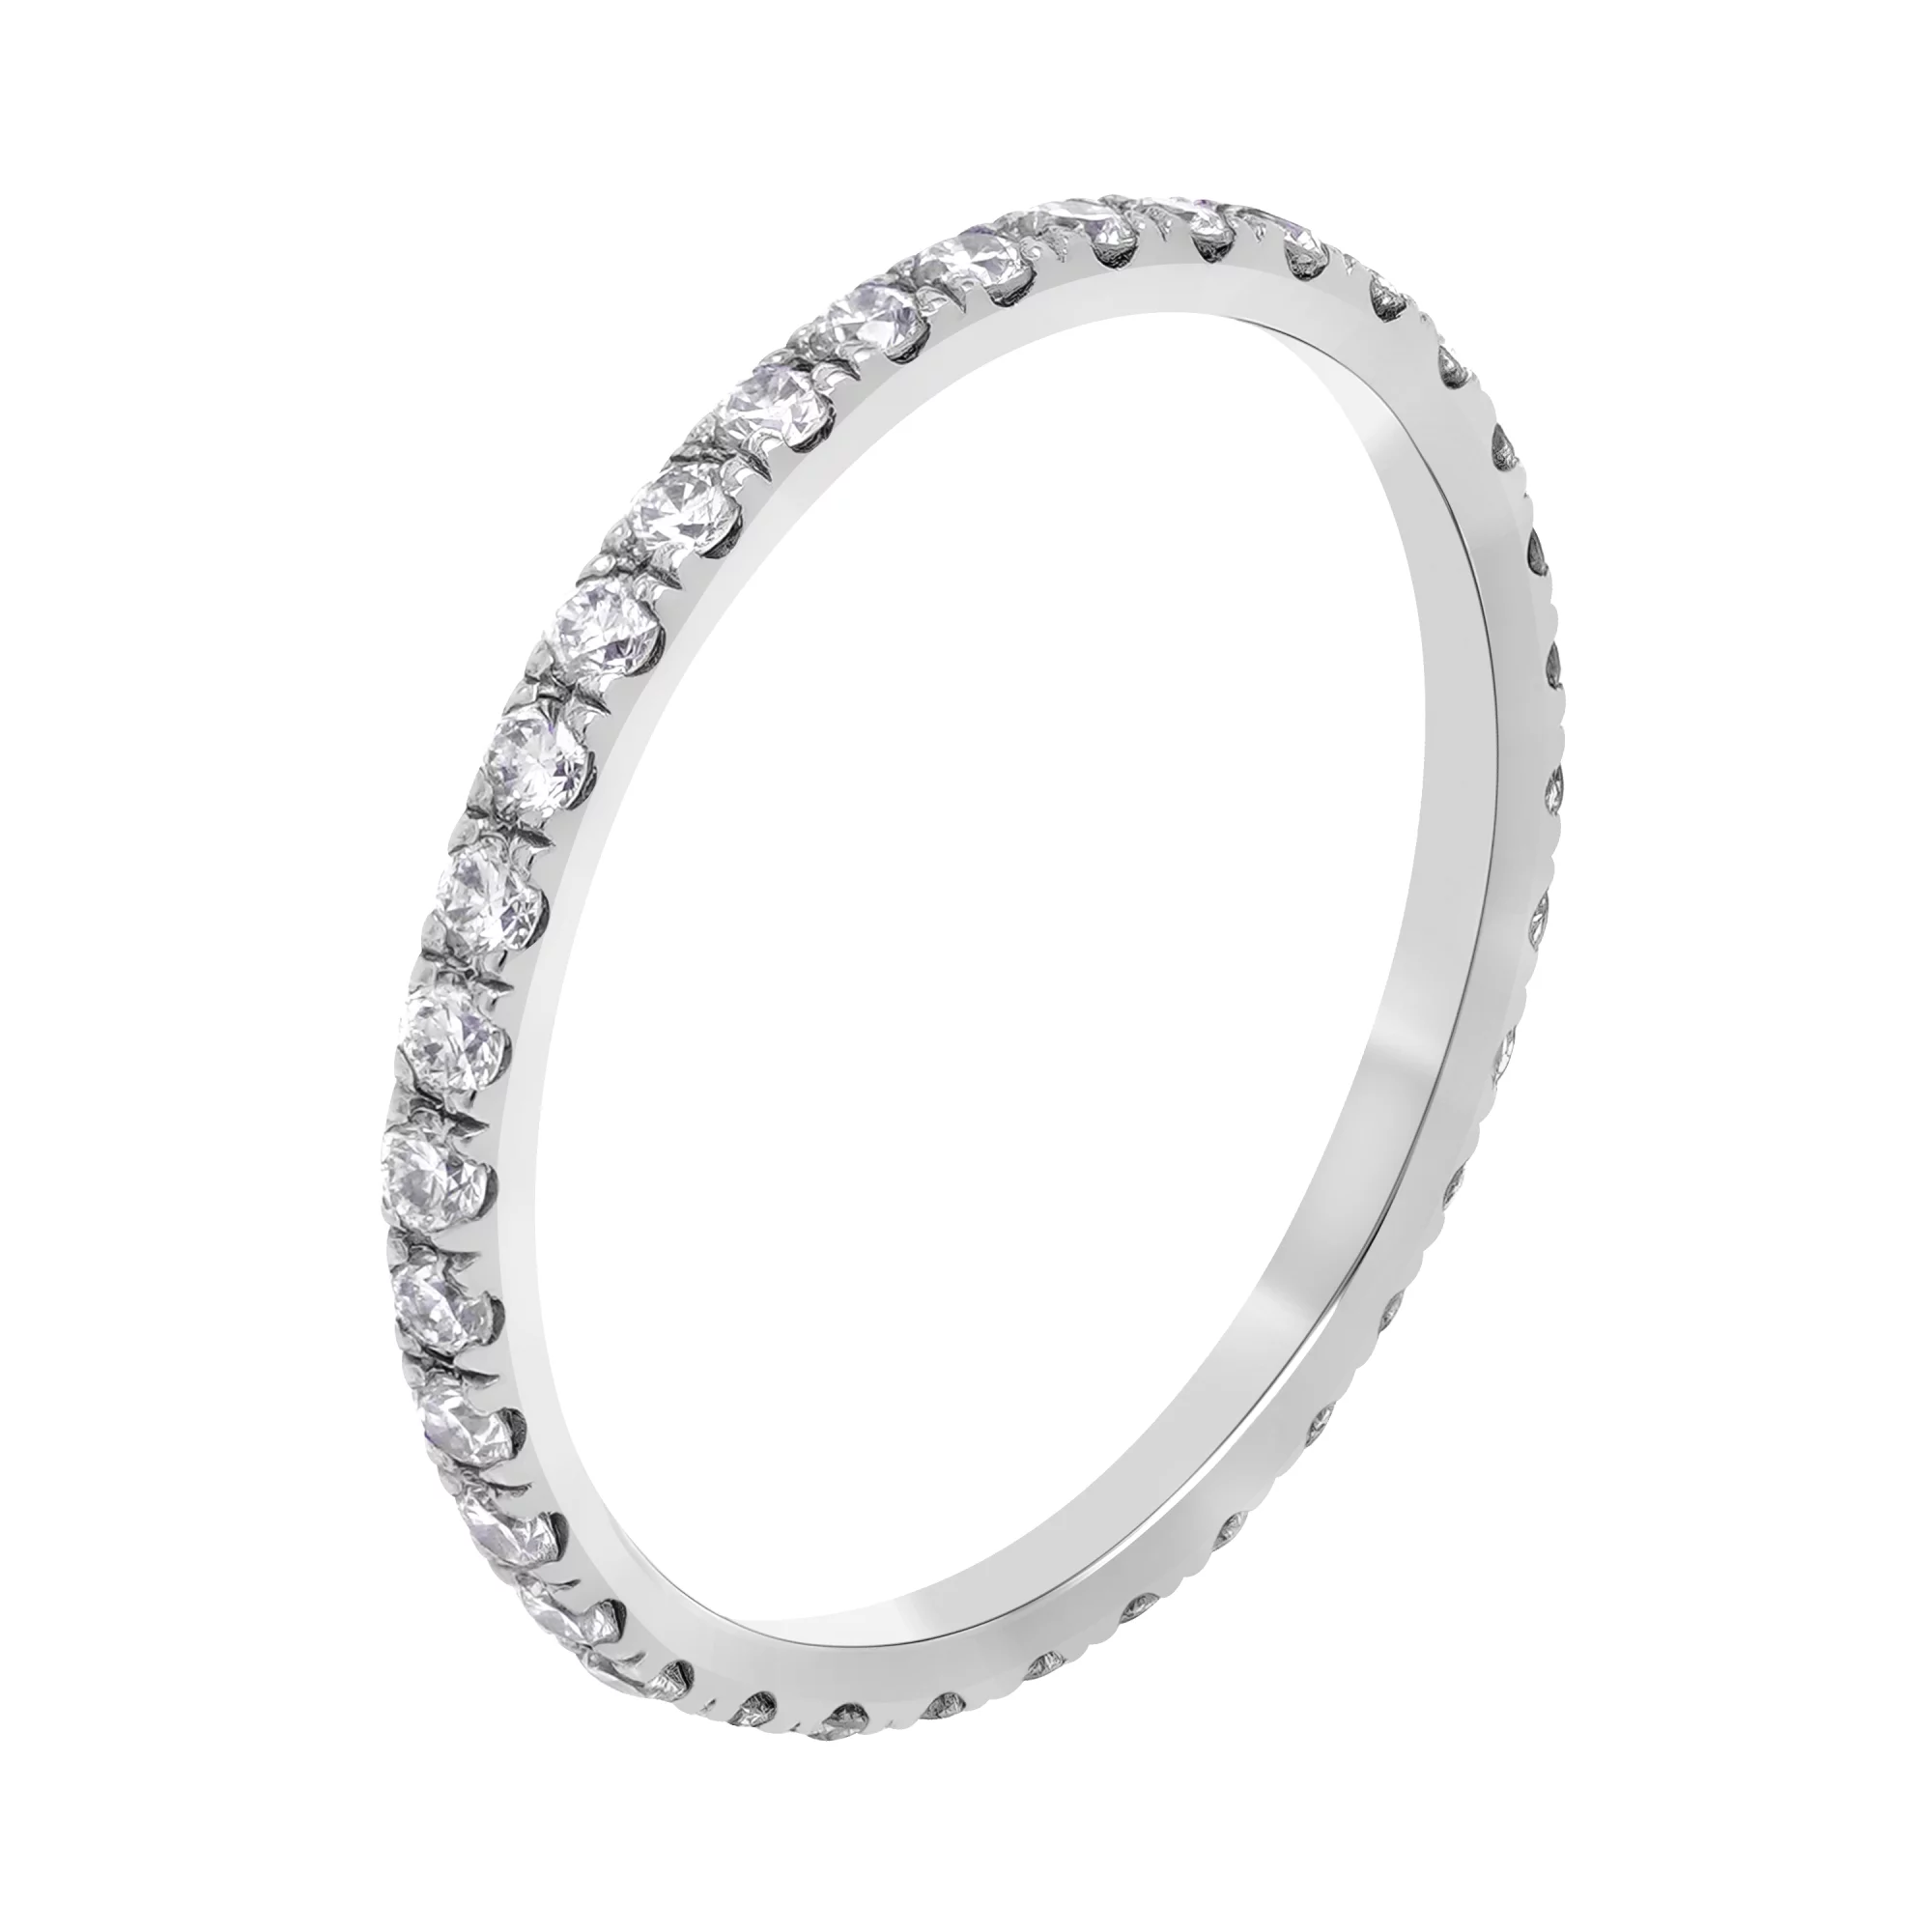 Тонкое кольцо в белом золоте с дорожкой бриллиантов - 1730941 – изображение 1